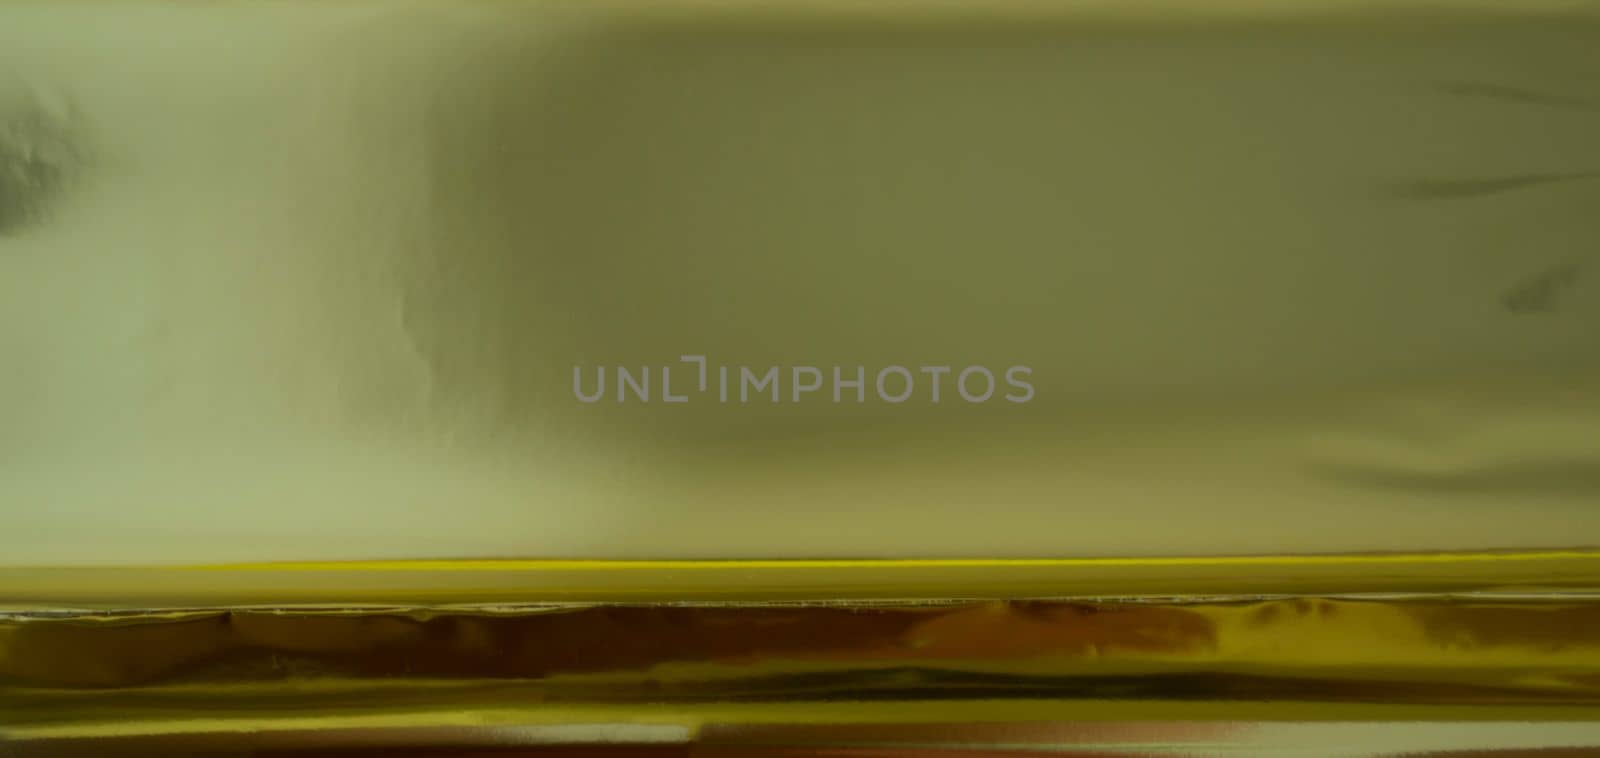 Texture, background, gold foil. Golden foil close up.